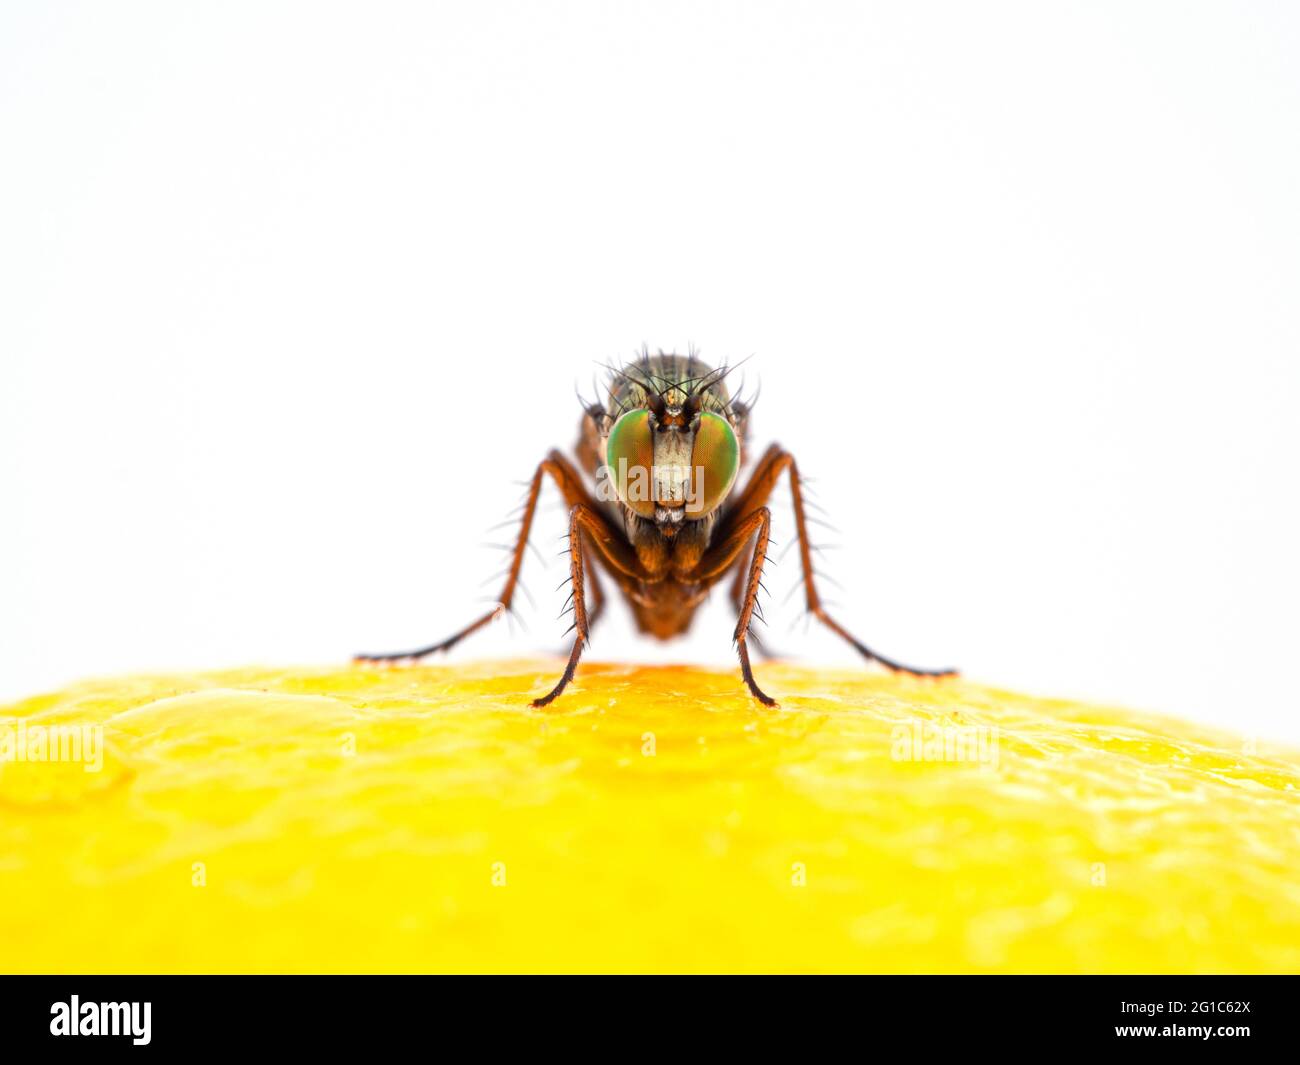 Langbeinige Fliege, Dolichopodidae-Spezies, mit bunten Augen, die die Kamera anstellen, während sie auf der Oberfläche einer Zitrone ruht. Isoliert Stockfoto